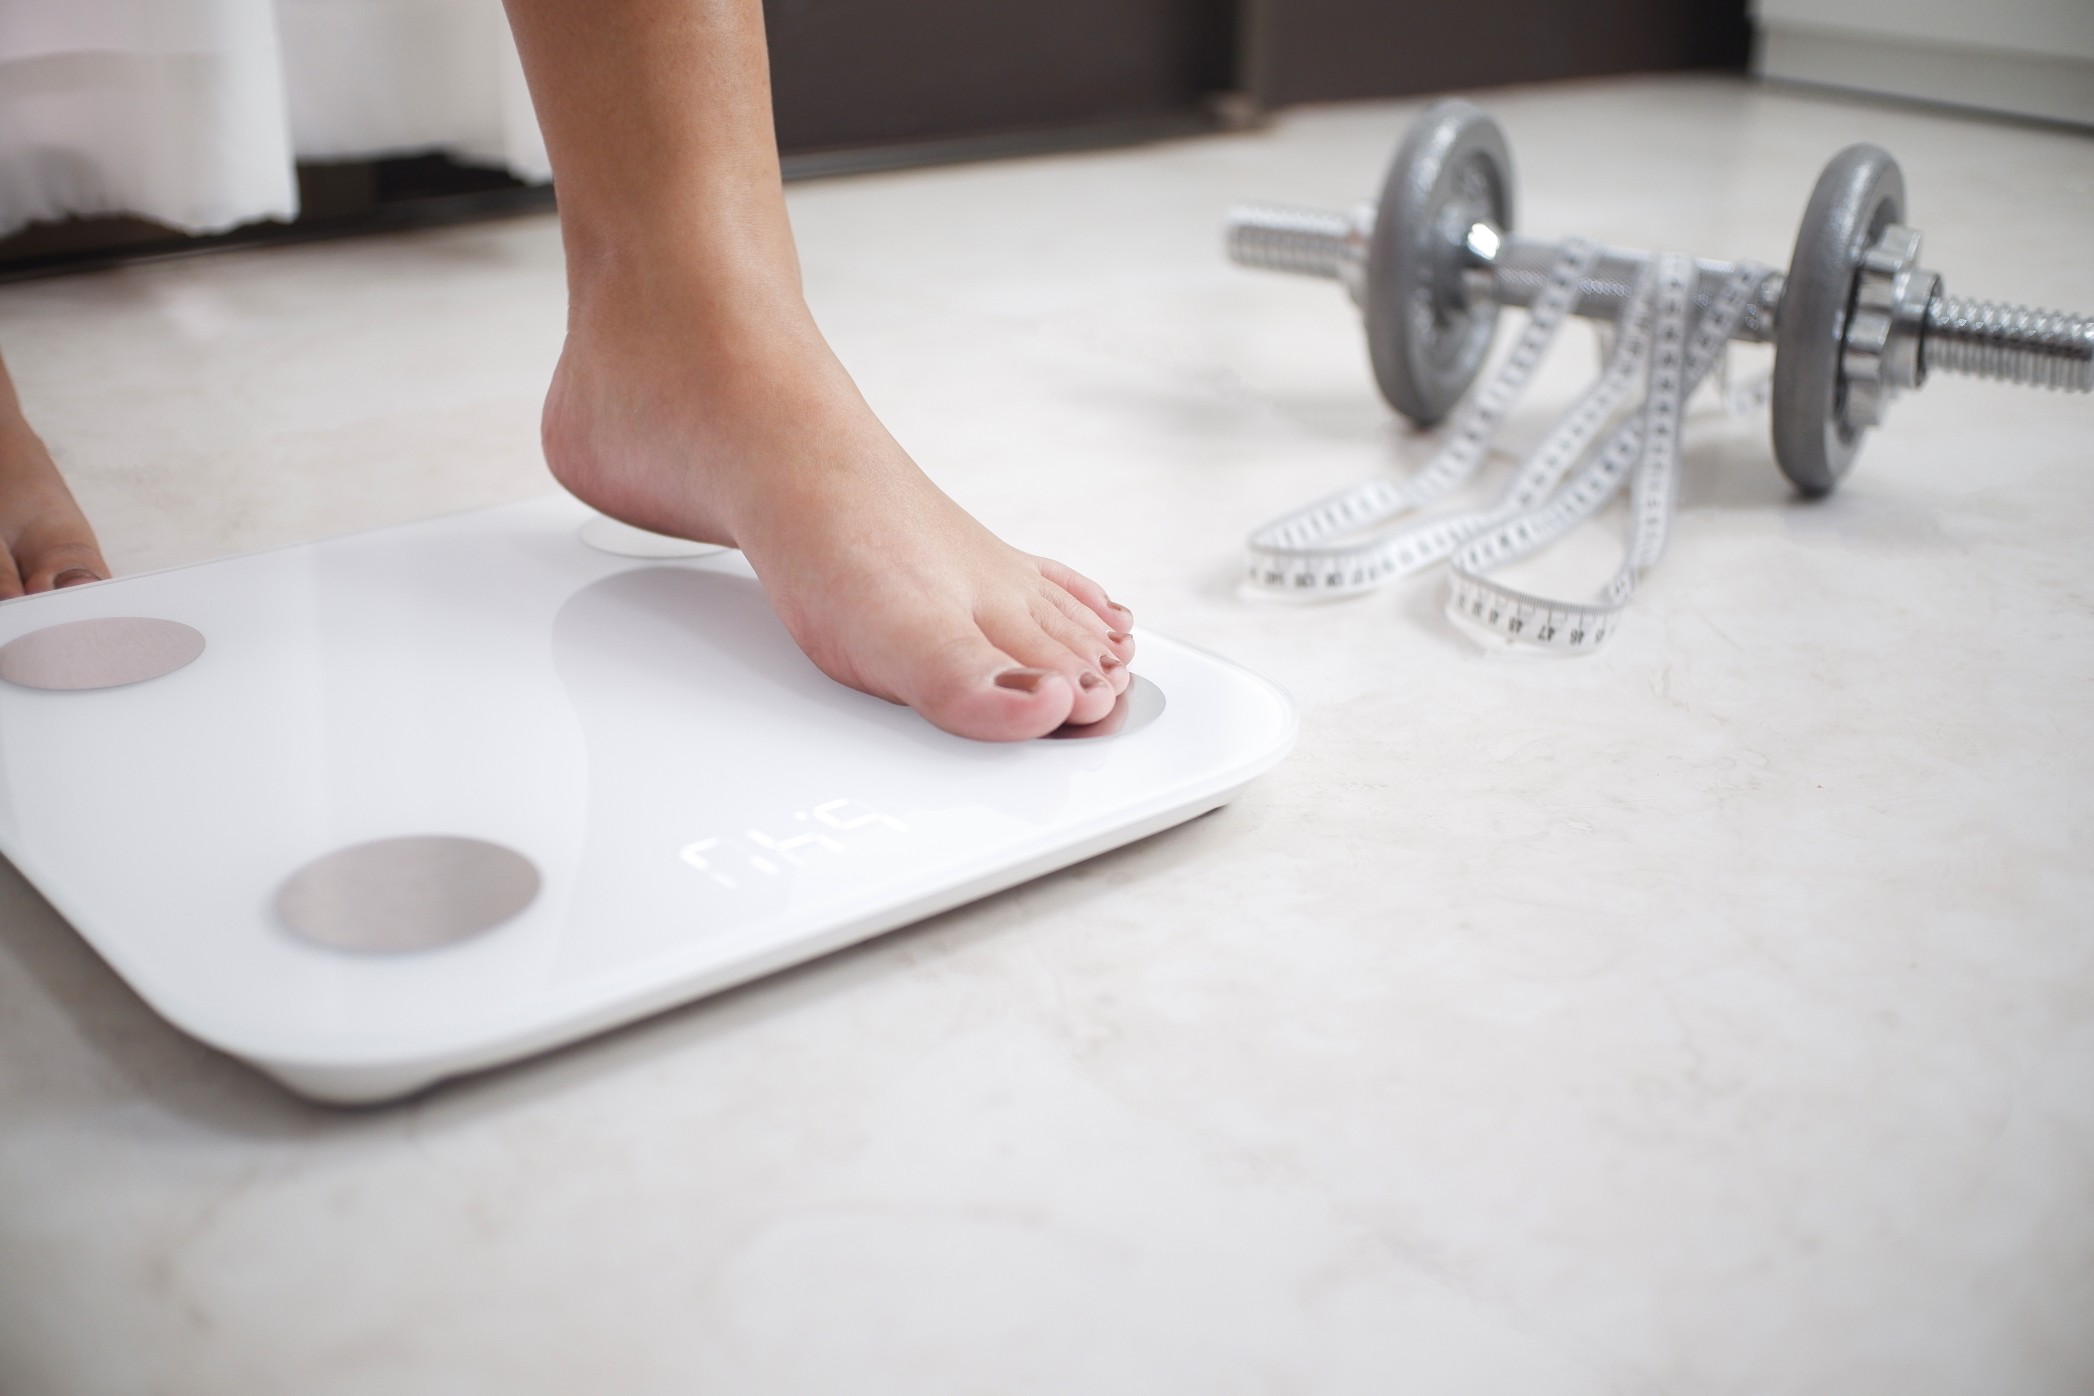 Les dangers que l’on peut rencontrer lorsque l’on souhaite perdre du poids.